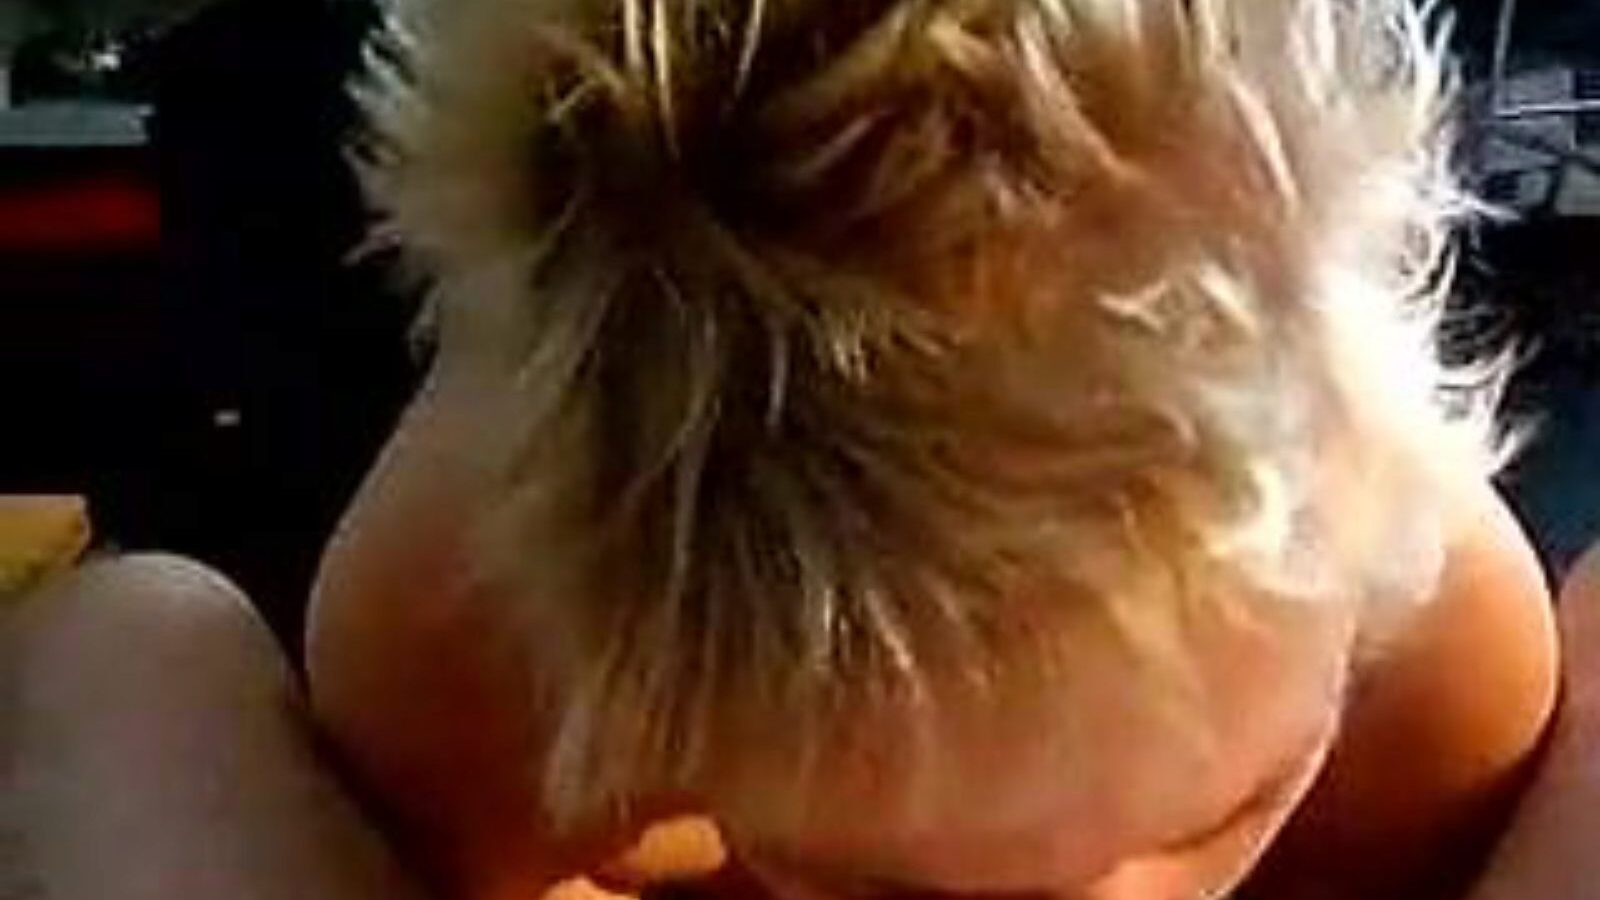 leuke dame: hjemmelavet & gammel pige porno video a6 - xhamster se leuke dame tube fuckfest film gratis på xhamster, med den hotteste samling af hollandsk hjemmelavet, gammel pige og sugende pornografi videooptagelser